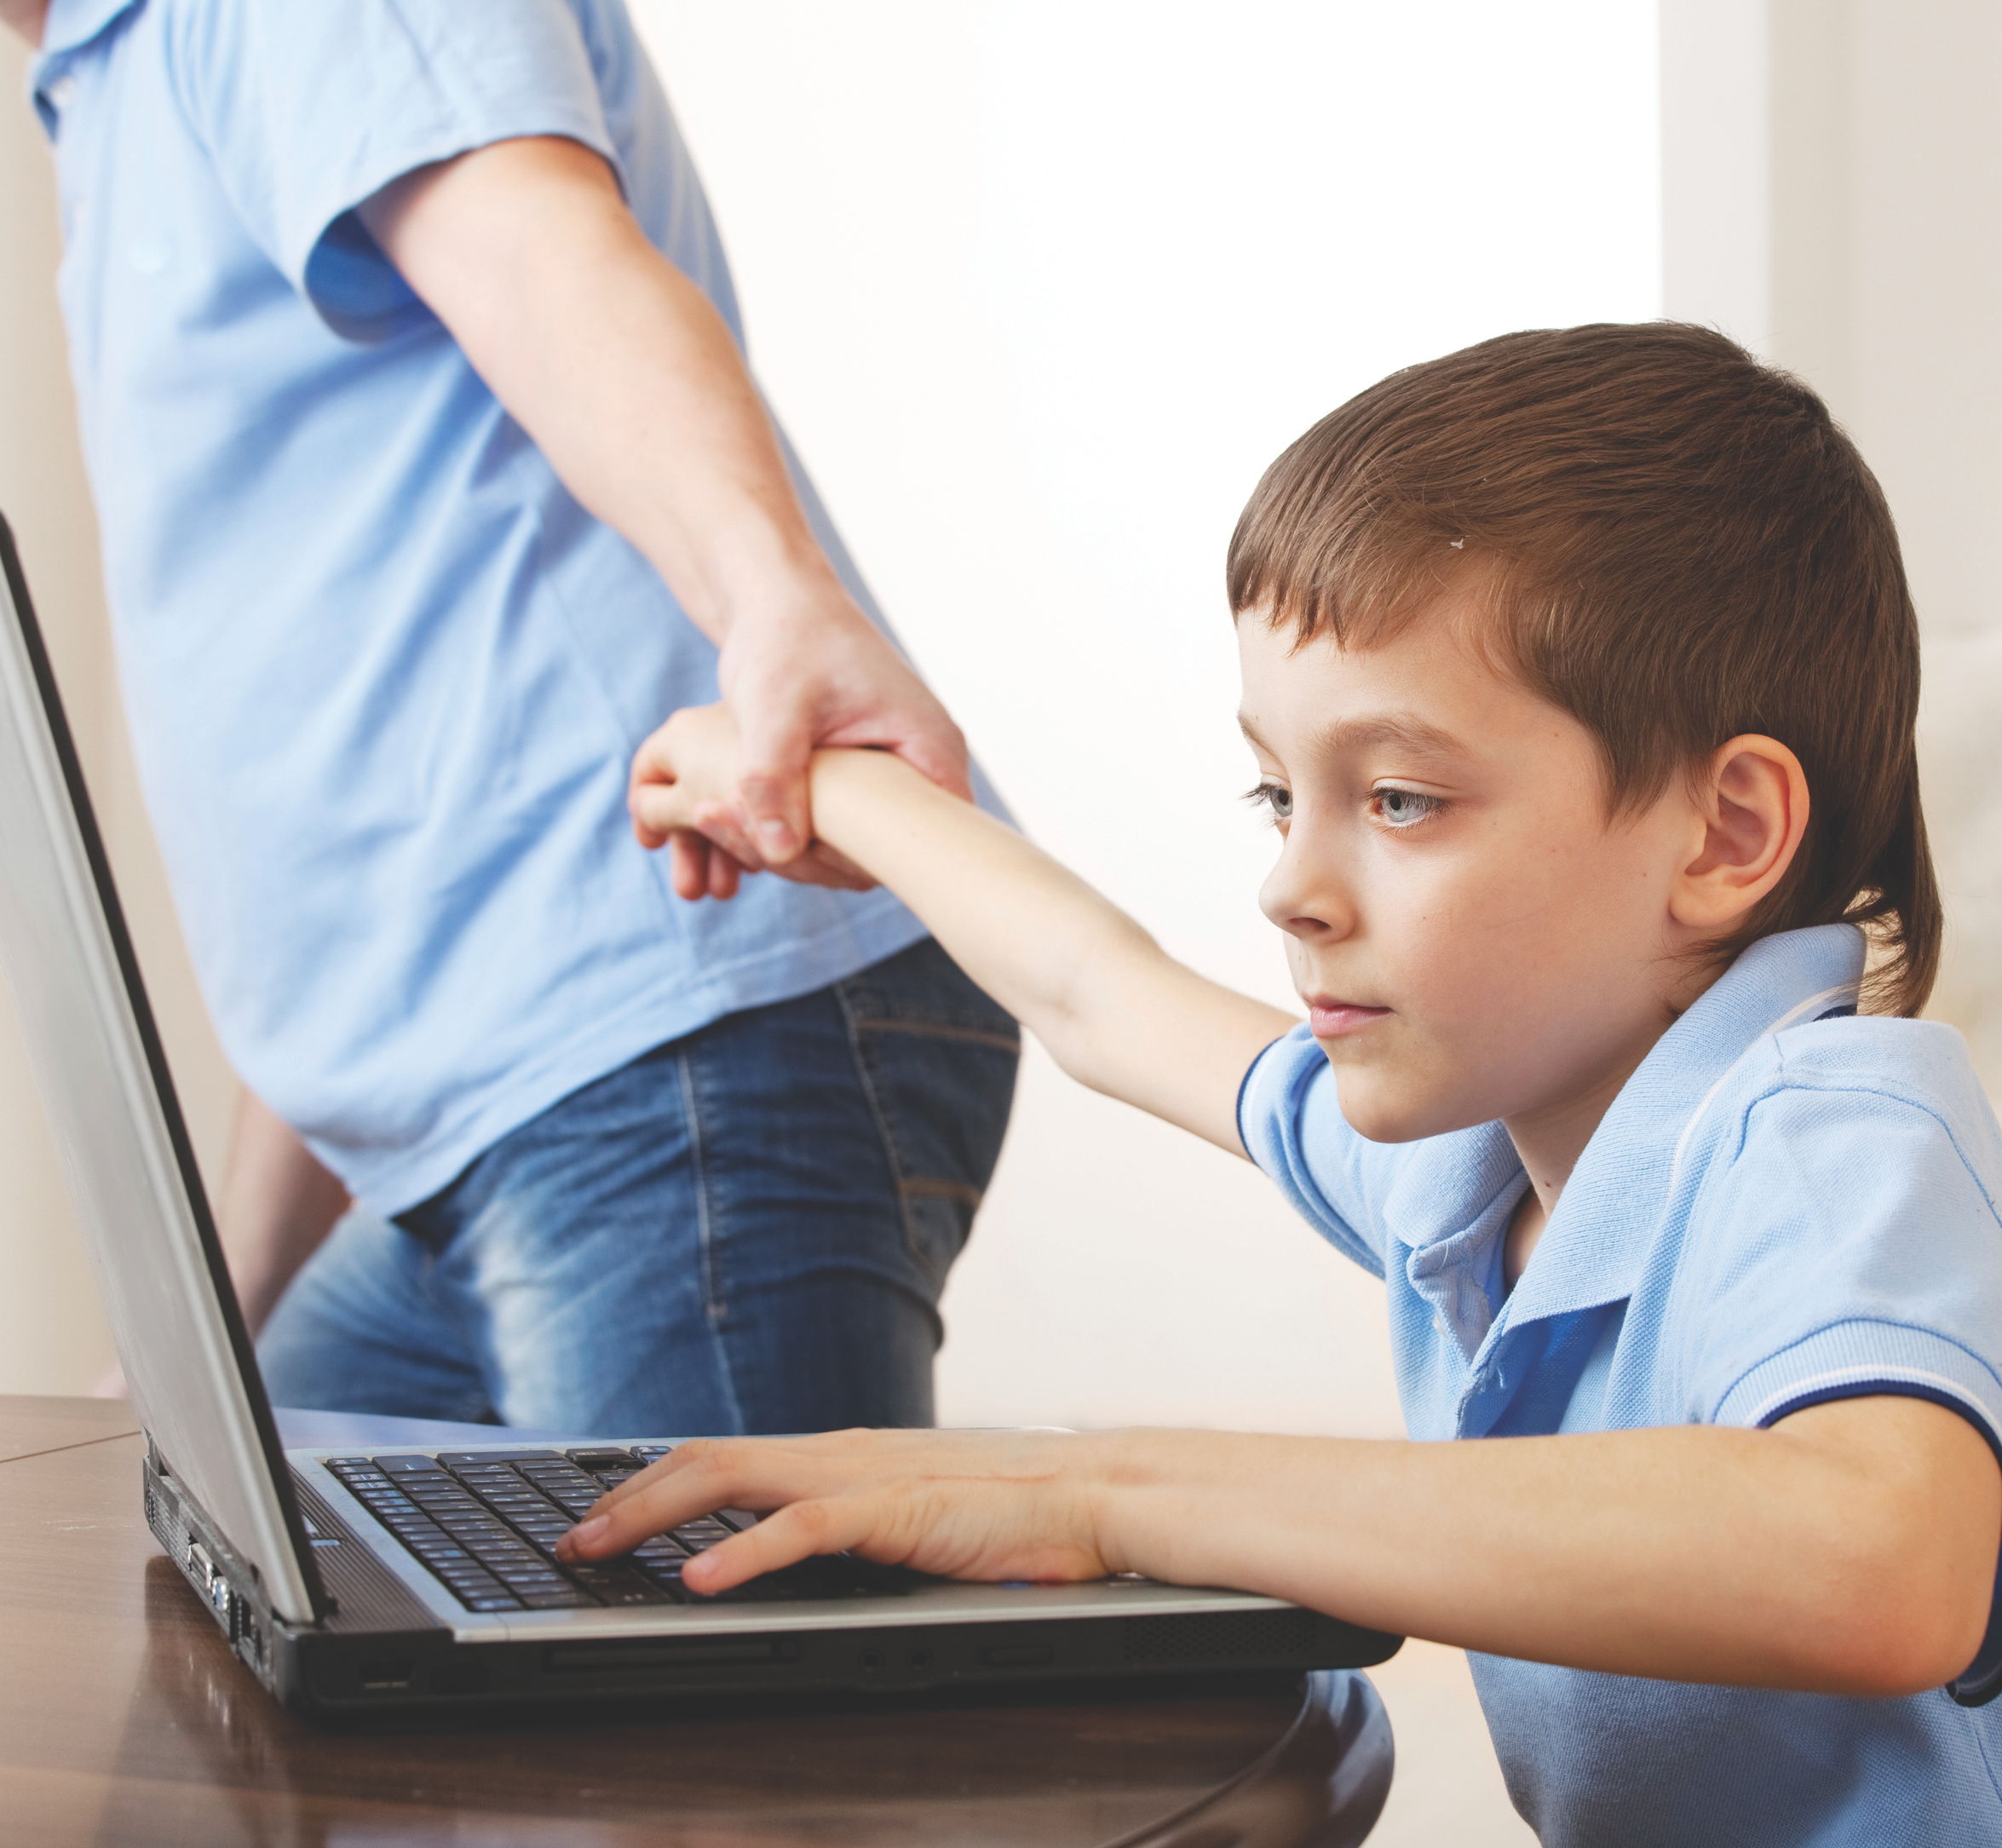 Usos nuevos de internet, un desafío para padres